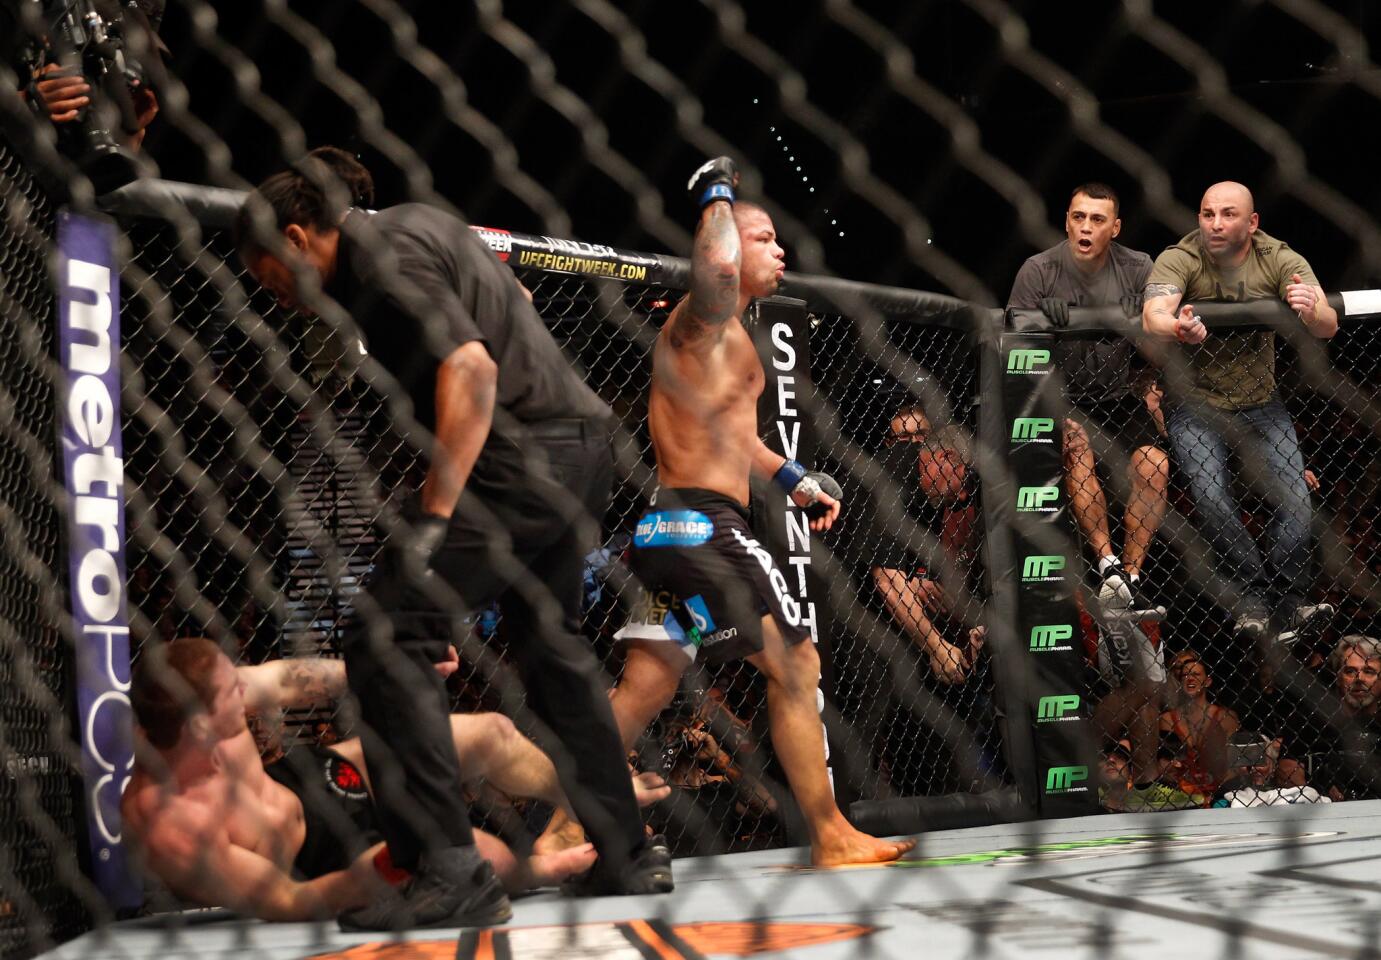 UFC 183: Mein v Alves